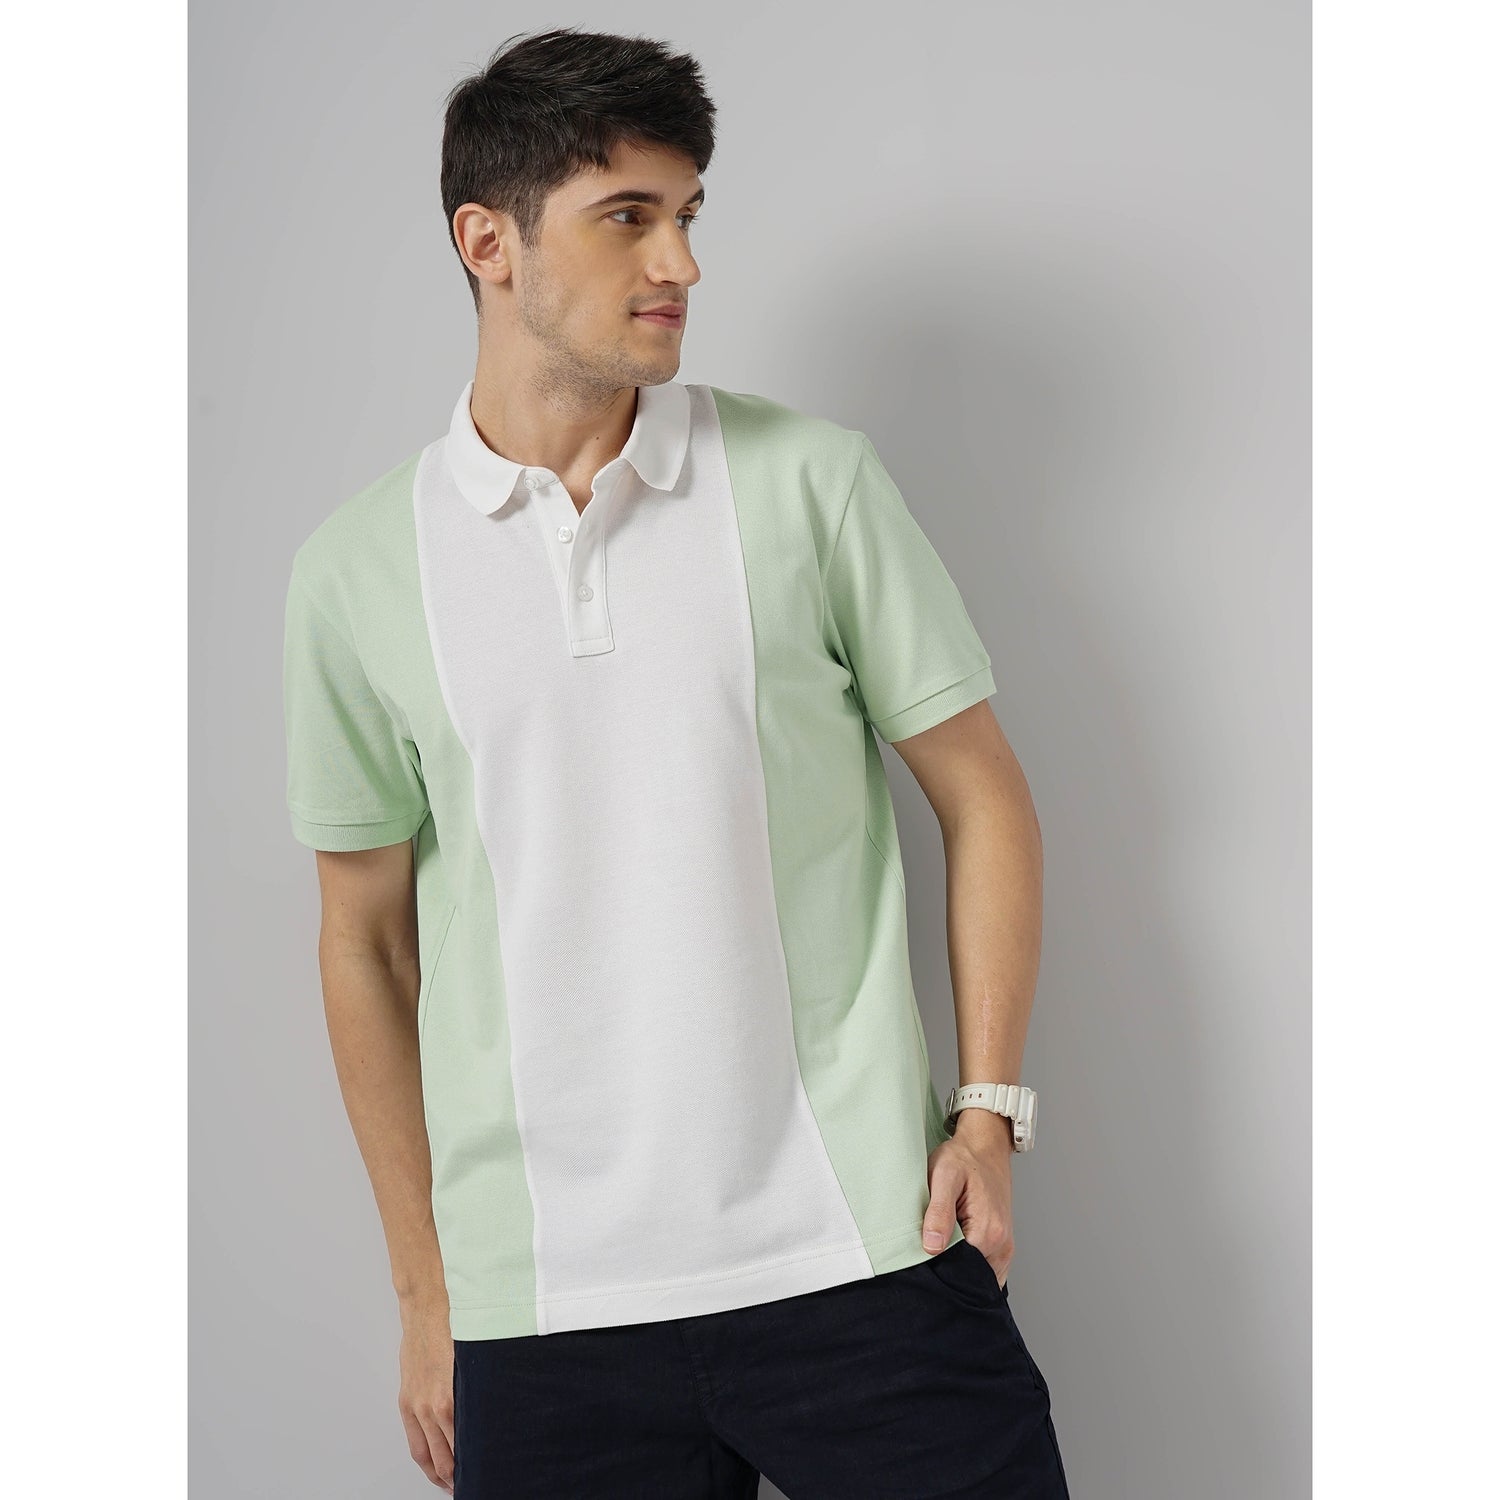 Men Green Polo Collar Colourblocked Regular Fit Cotton Fashion Polo T-Shirt (GETROISIN)